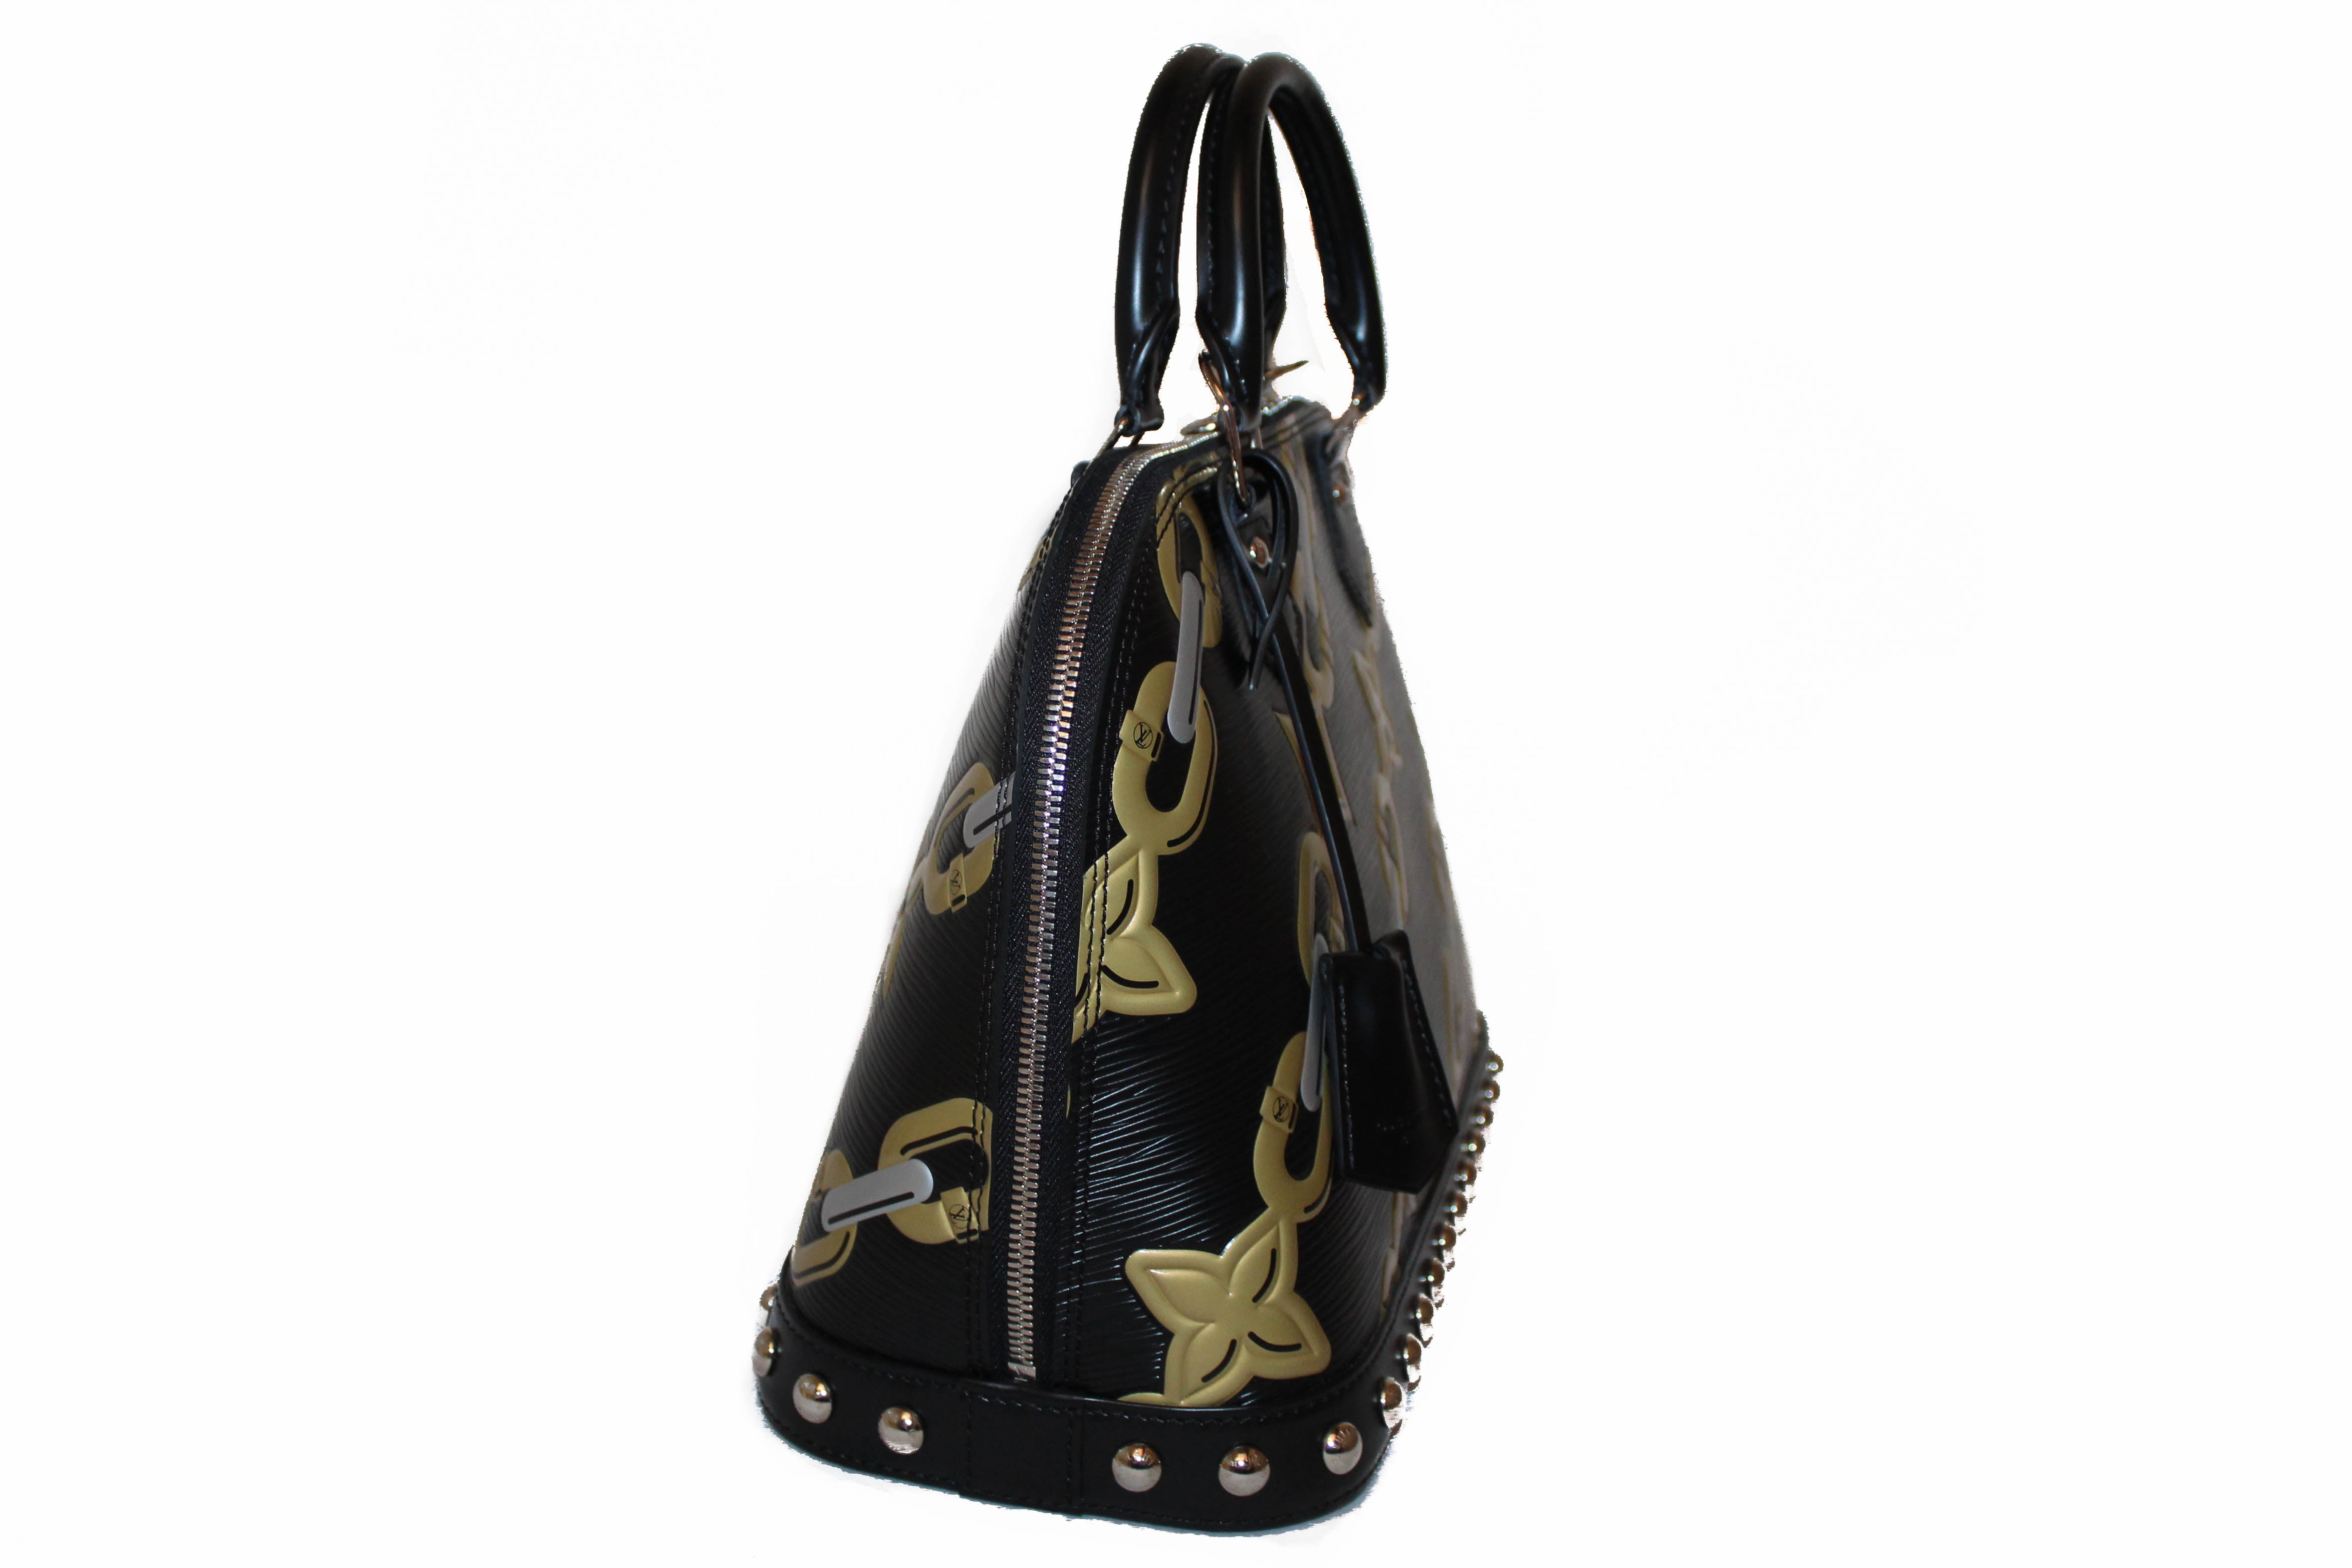 Authentic Louis Vuitton Black Epi Leather Chain Flower Alma PM Handbag –  Paris Station Shop